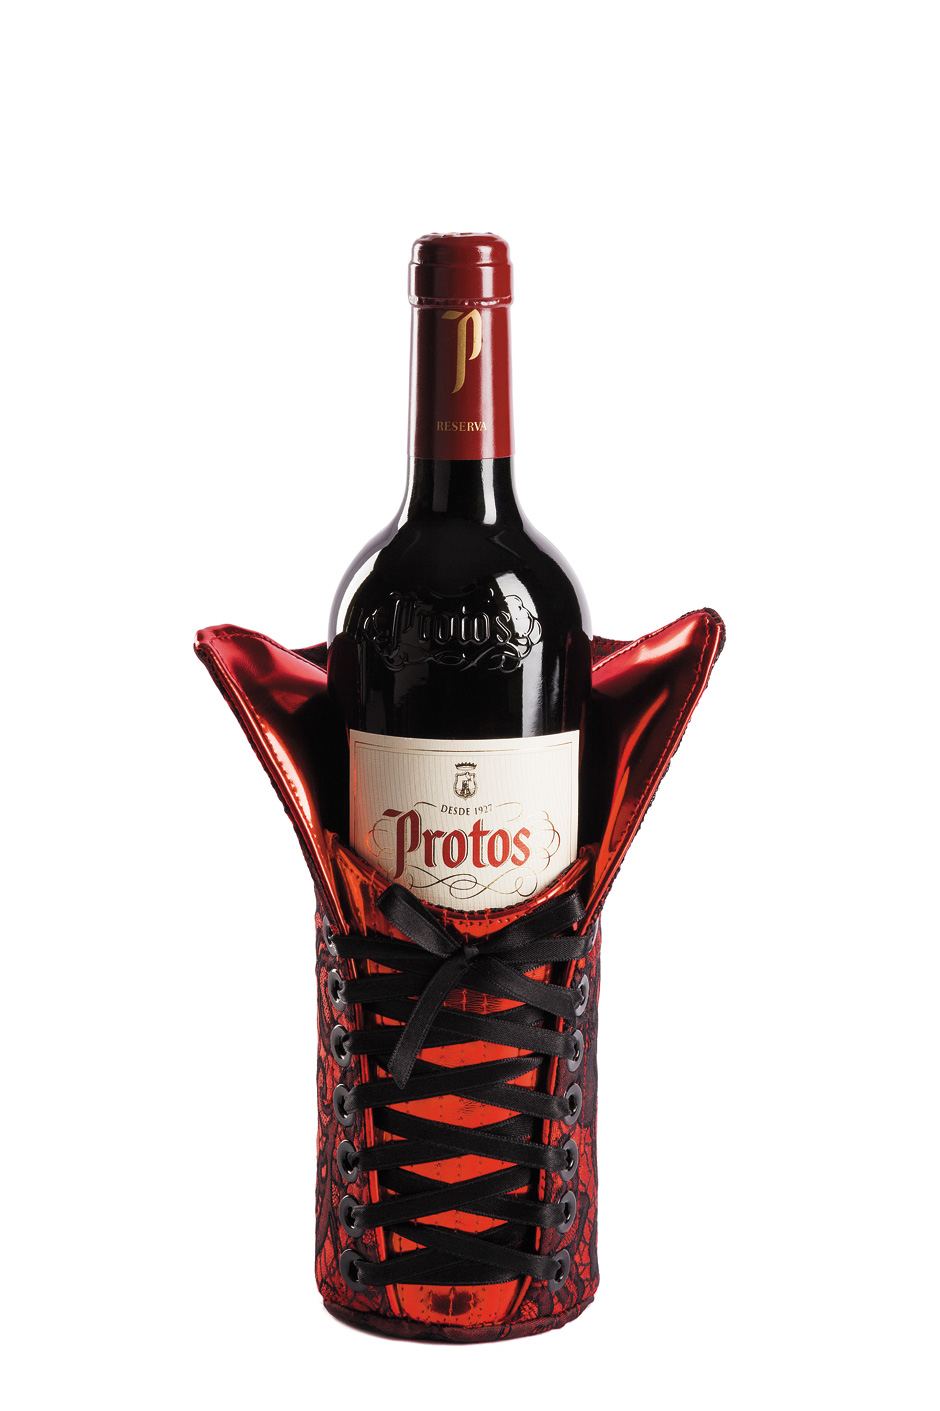 Die Protos Reserva Weinweihnachtsverpackung wurde von der Designerin Maya Hansen entworfen